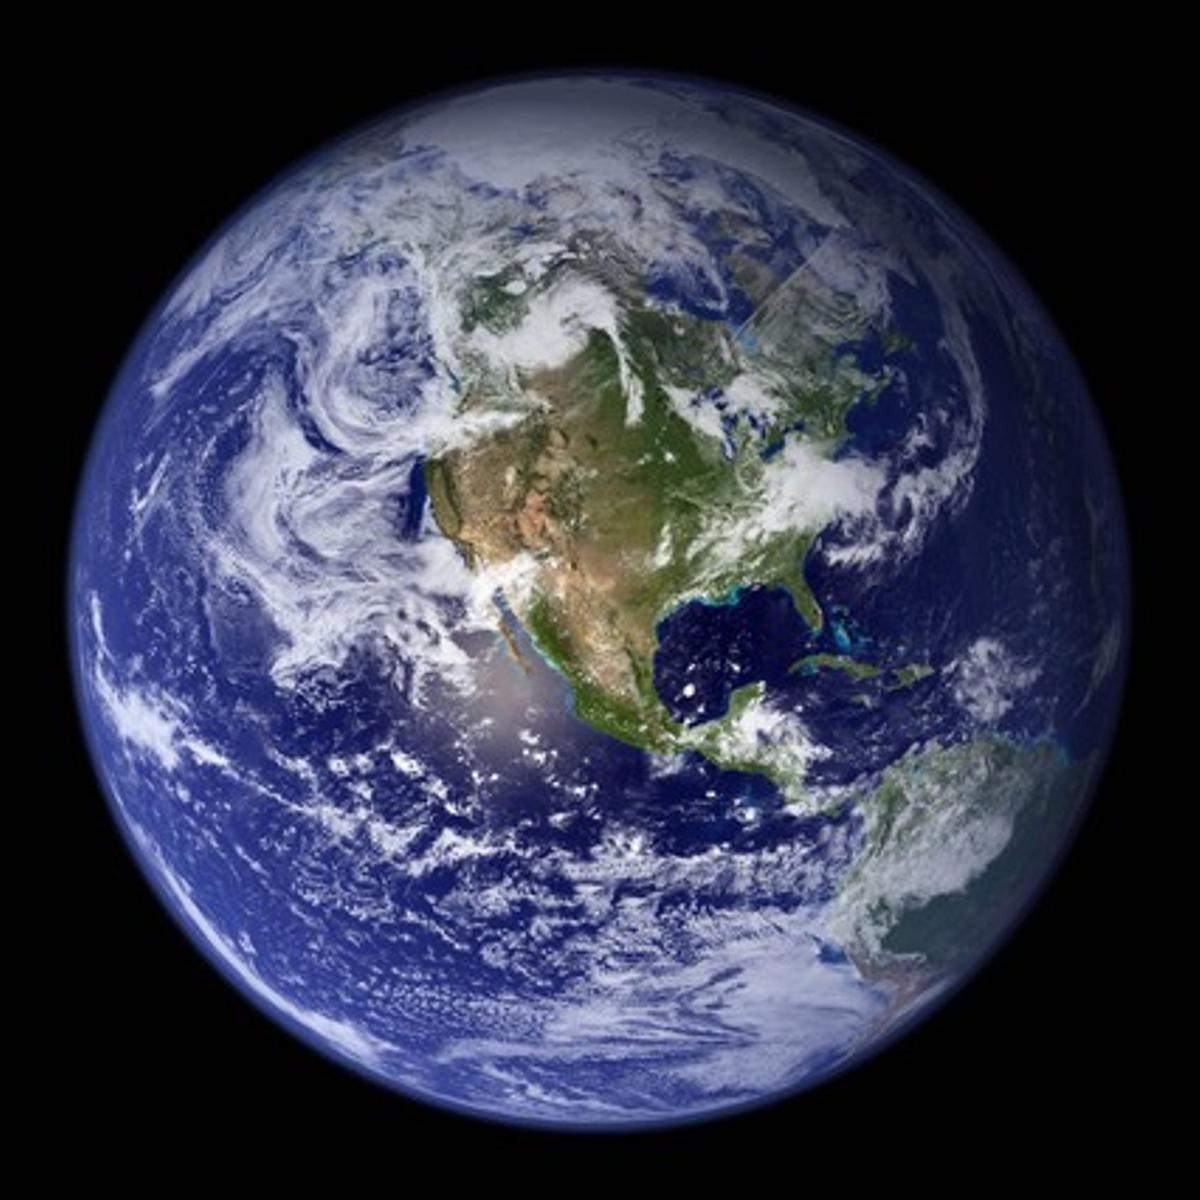 Imagen de la Tierra tomada desde el espacio